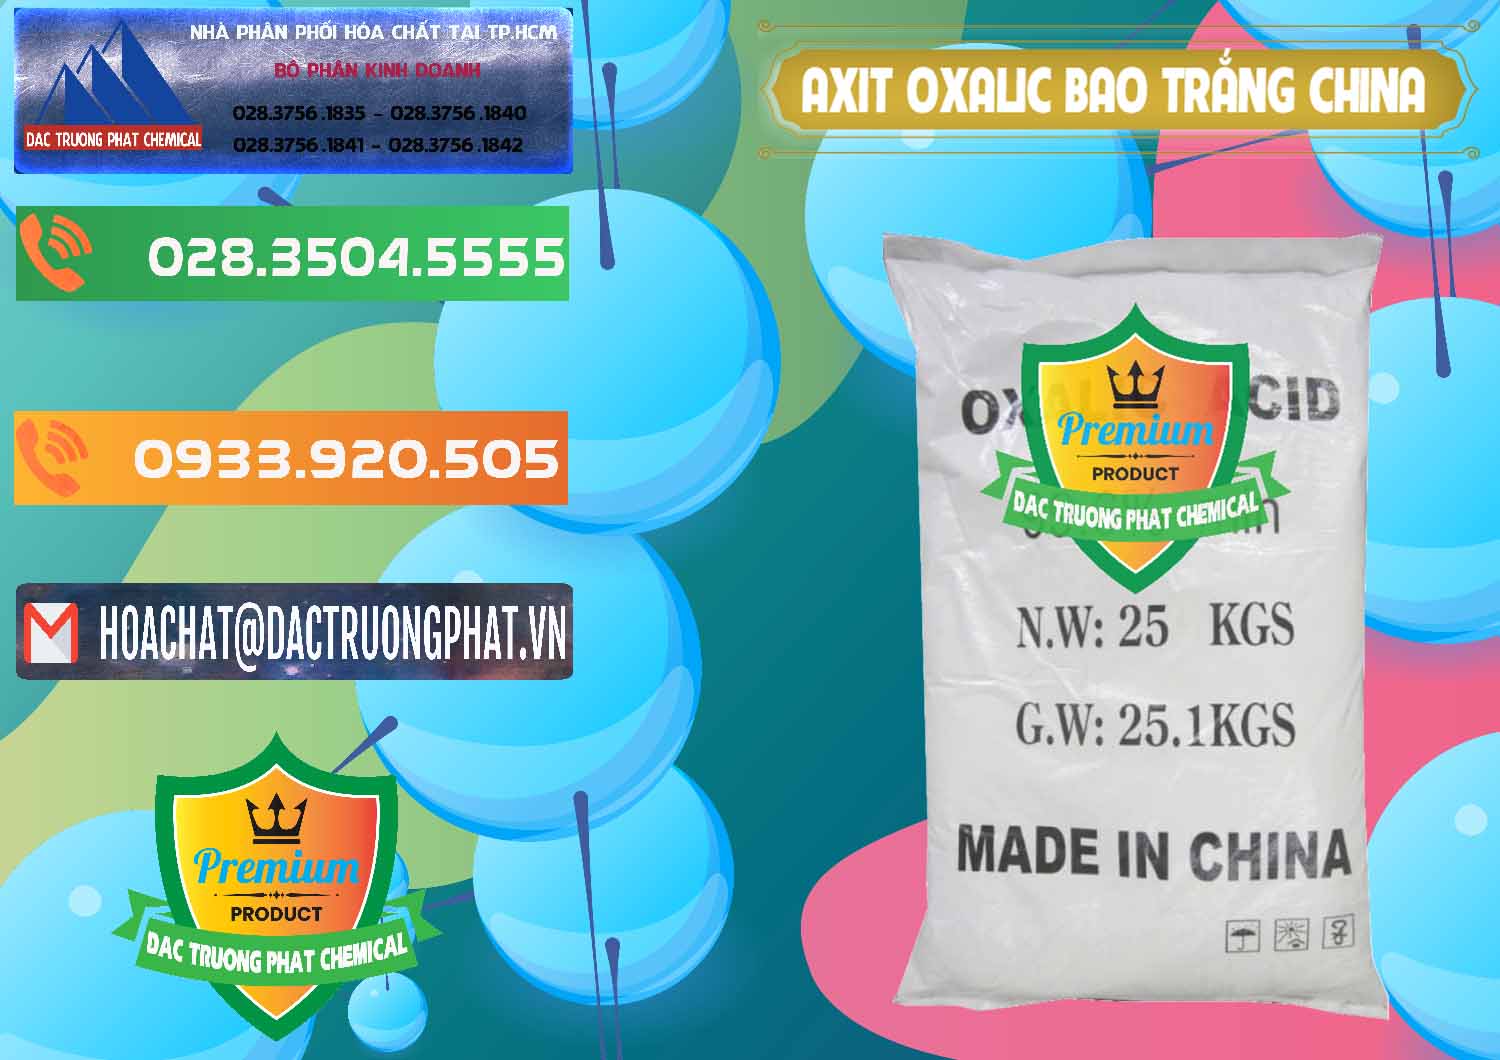 Nhà phân phối & bán Acid Oxalic – Axit Oxalic 99.6% Bao Trắng Trung Quốc China - 0270 - Đơn vị cung cấp & kinh doanh hóa chất tại TP.HCM - hoachatxulynuoc.com.vn